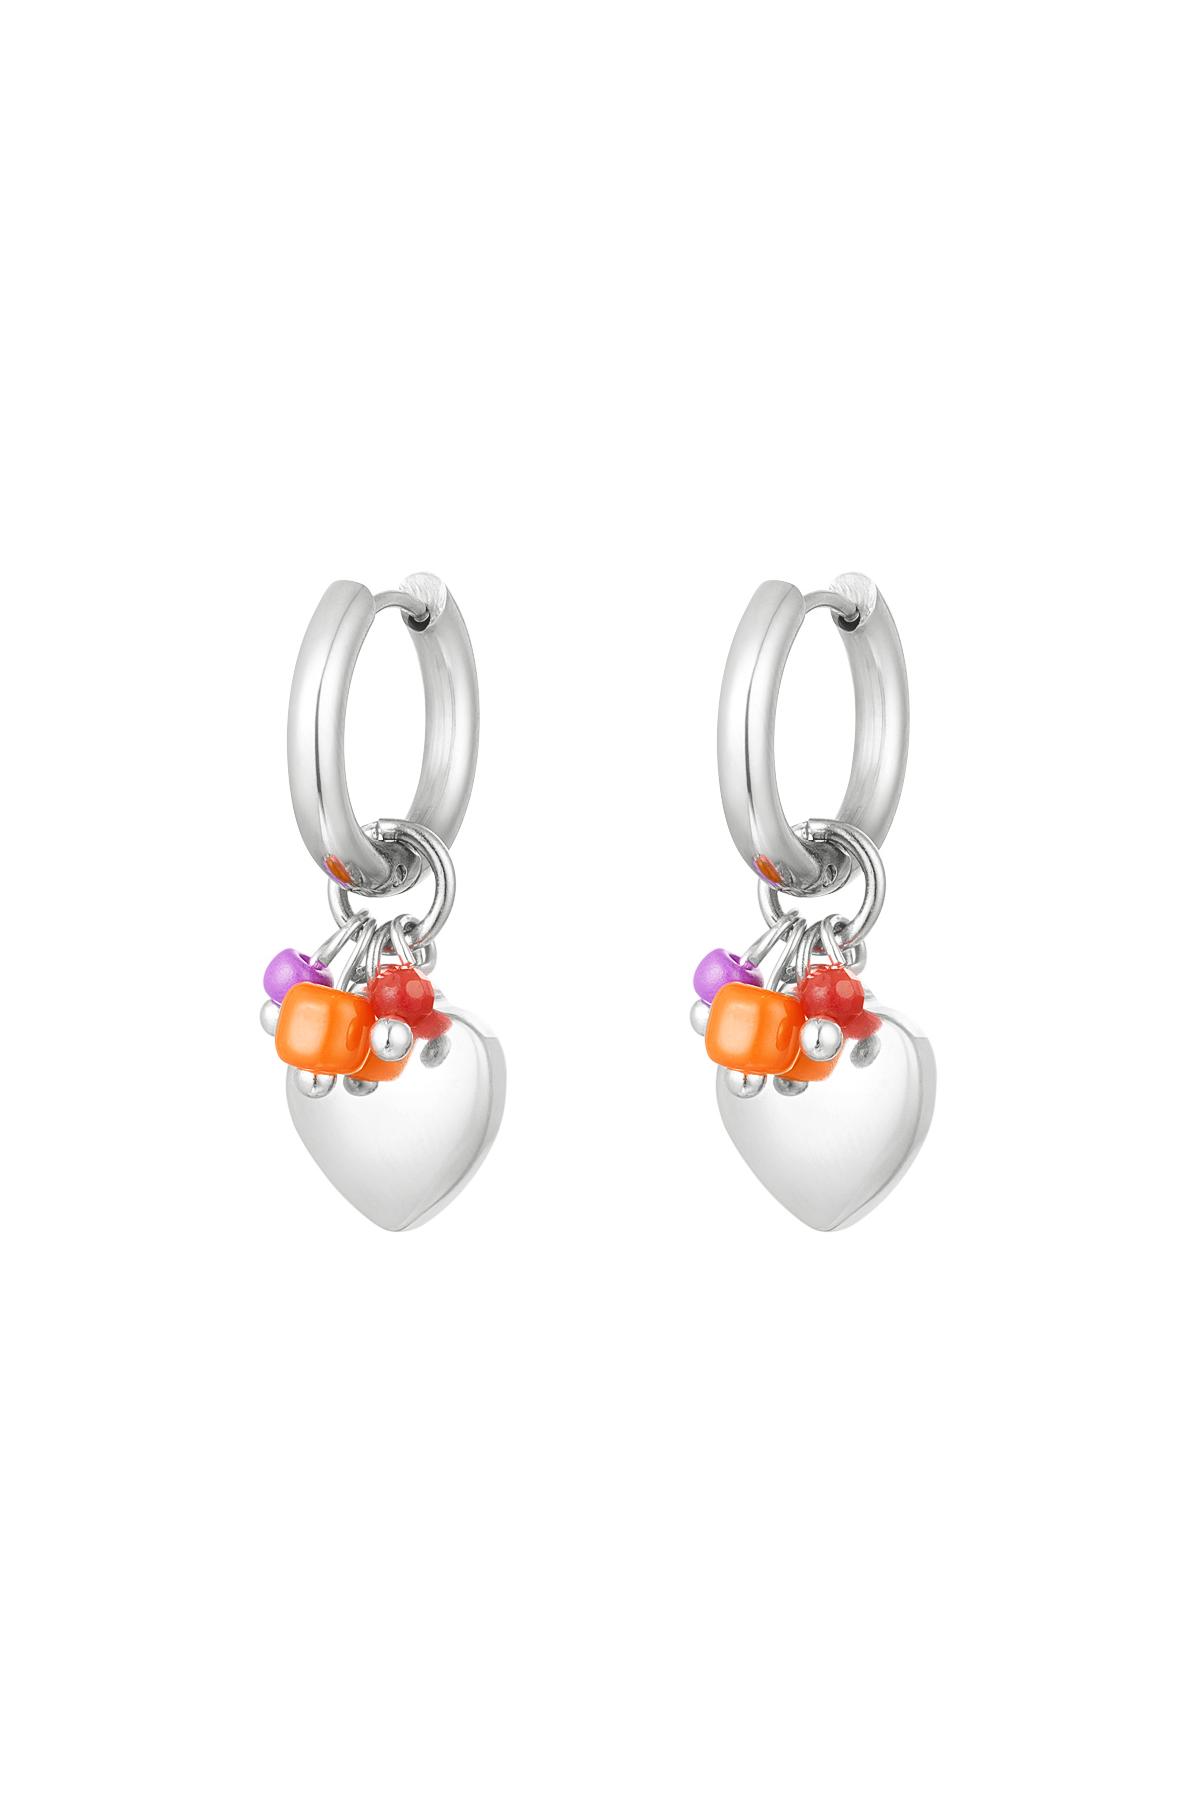 Boucles d'oreilles coeur avec perles Argenté Acier inoxydable h5 